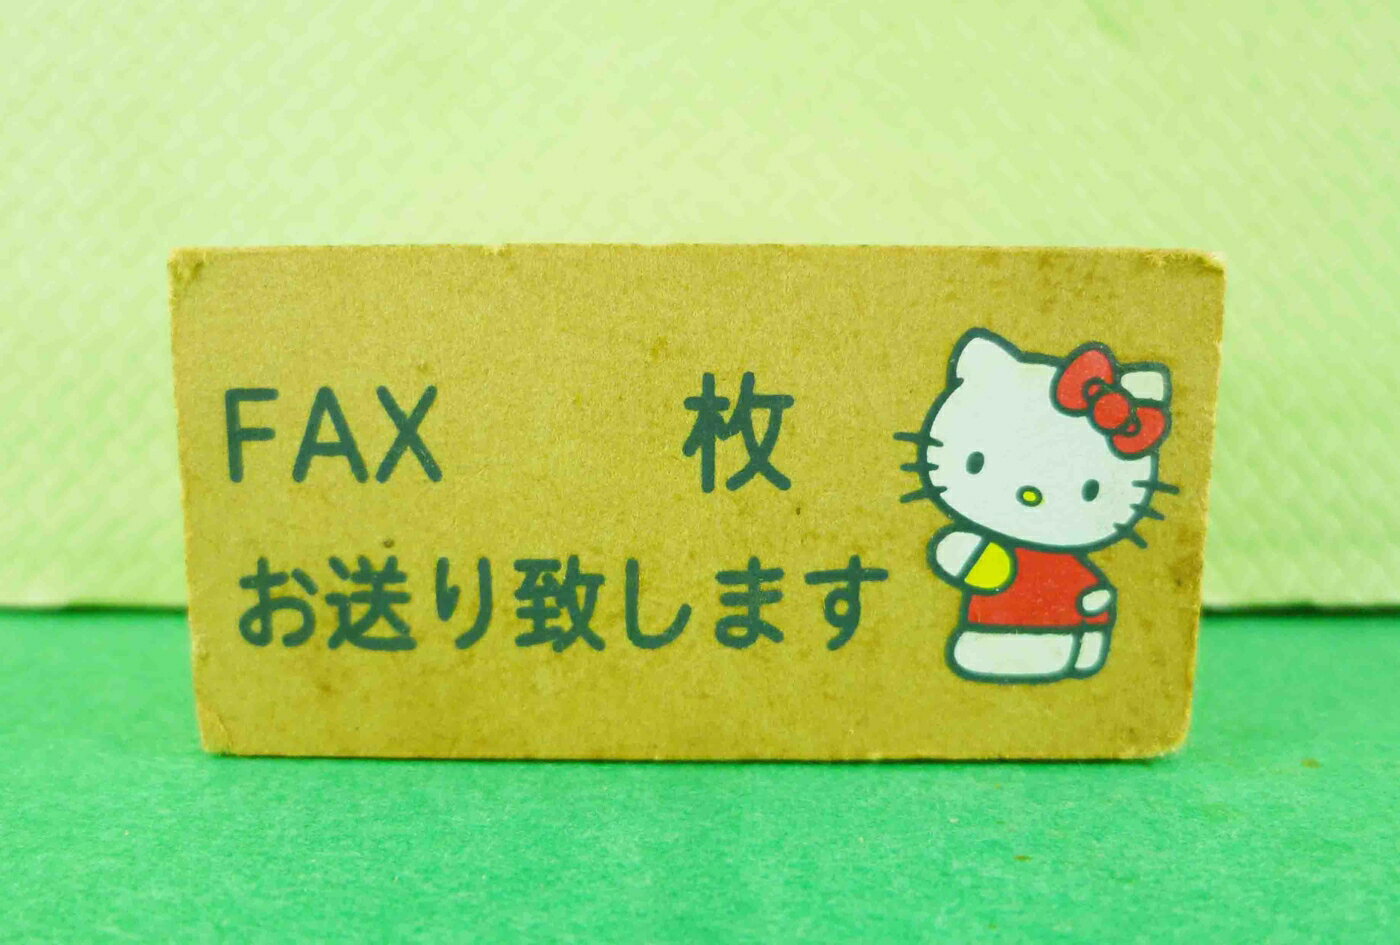 【震撼精品百貨】Hello Kitty 凱蒂貓 KITTY木製印章-傳真FAX圖案 震撼日式精品百貨